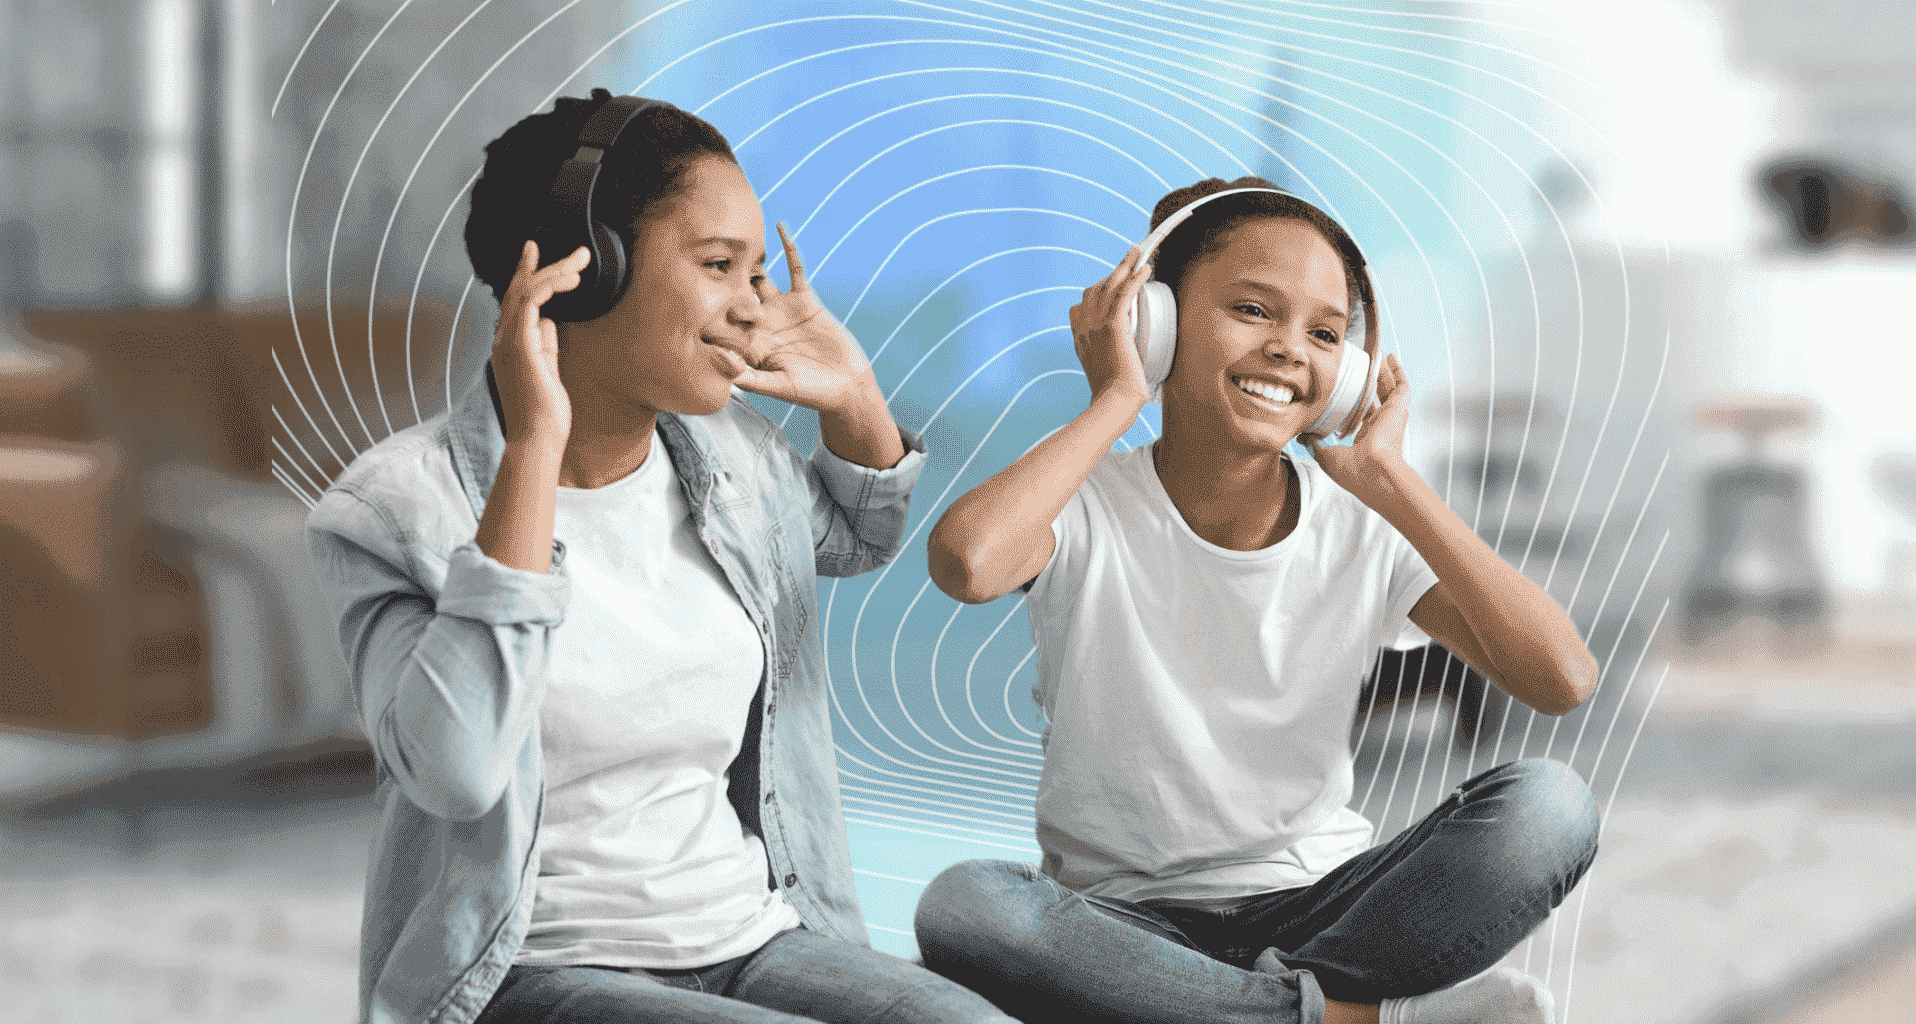 Bluetooth Auracast iki çocuk tarafından kulak üstü kablosuz kulaklıkla paylaşılıyor